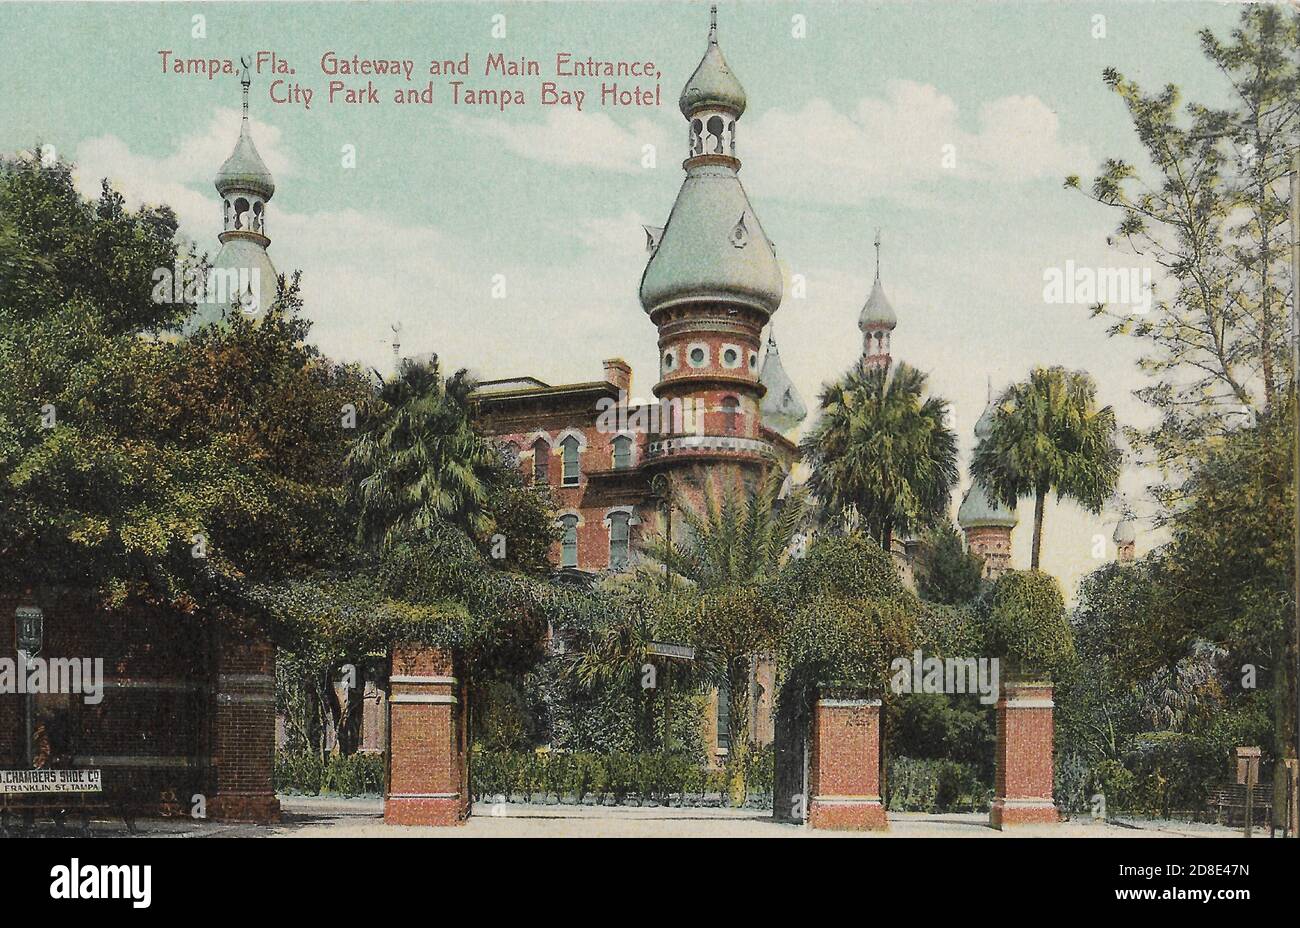 Tampa Florida, Gateway and Main Entrance at City Park and Tampa Bay Hotel Stock Photo